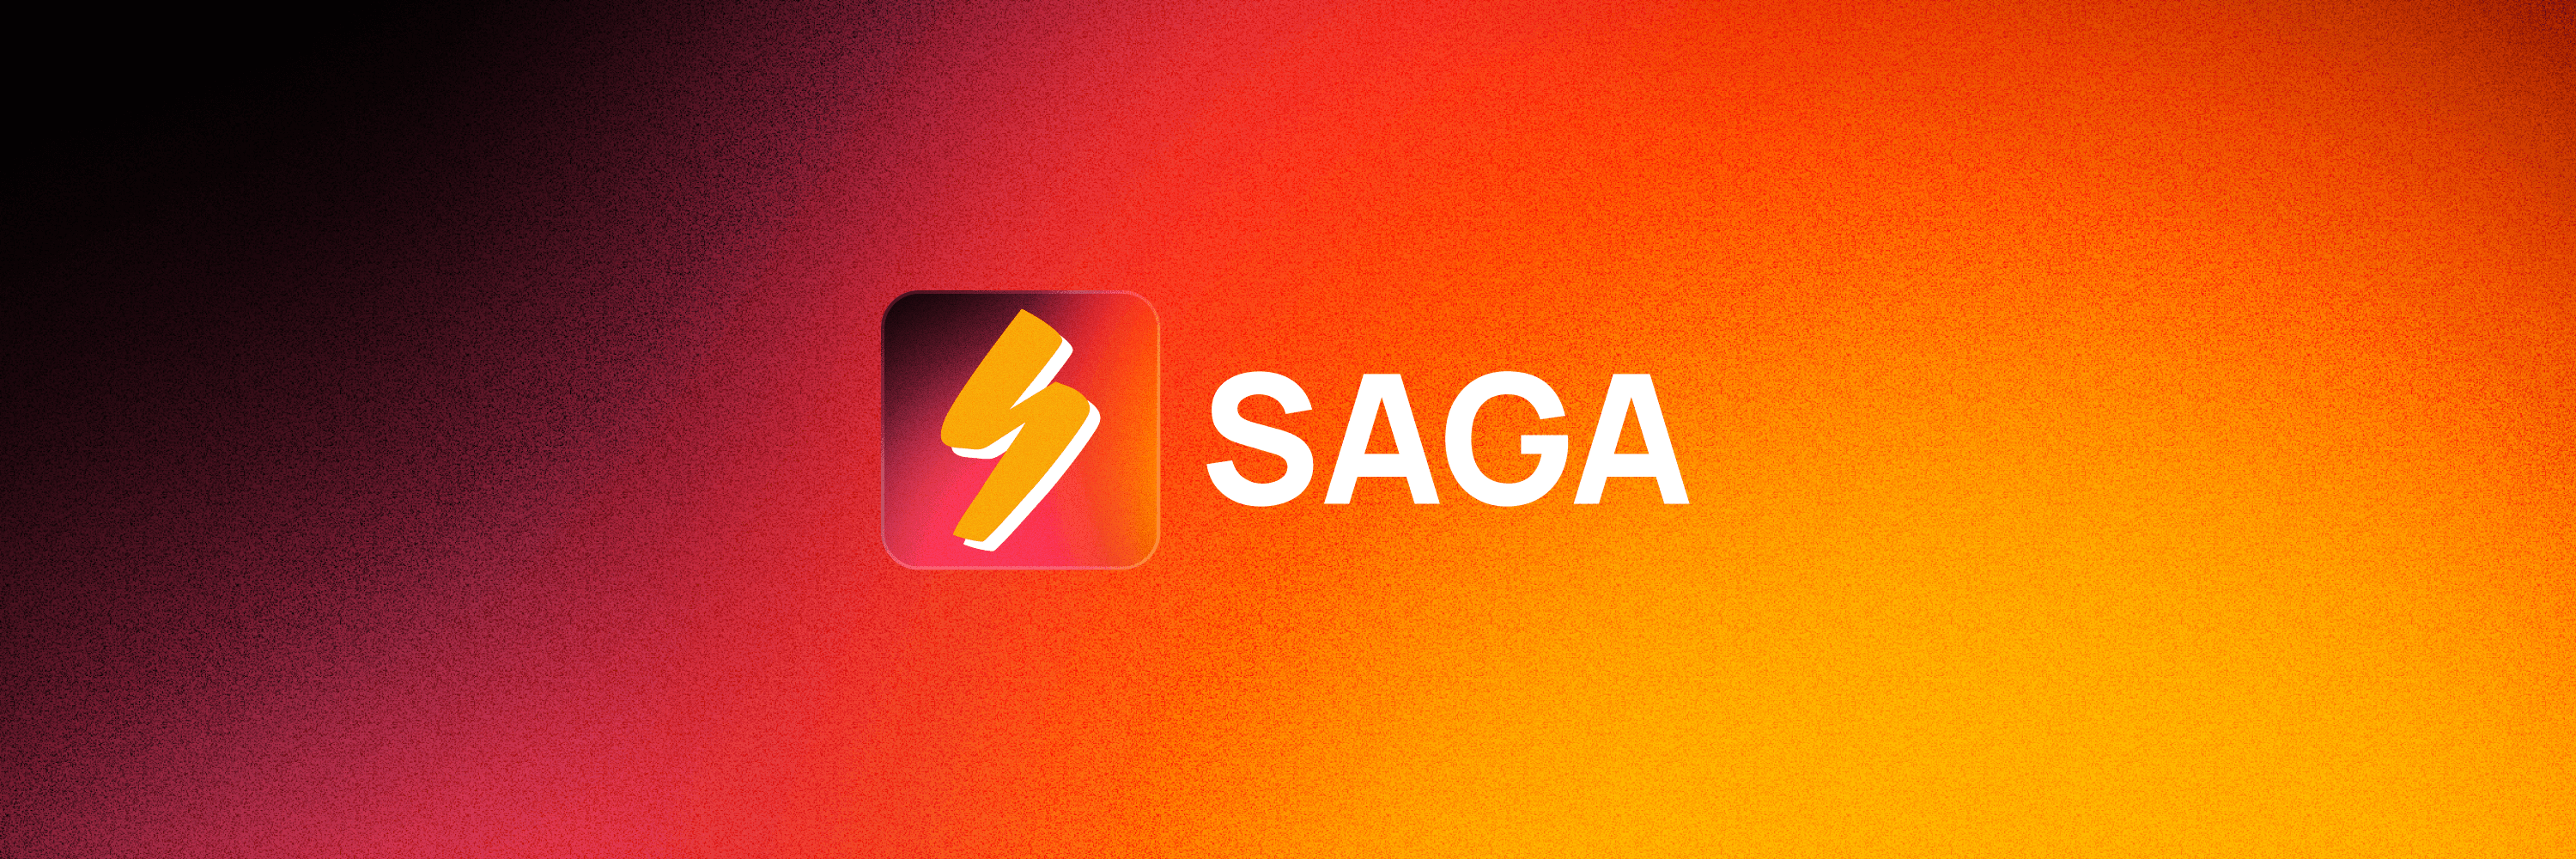 SAGA-Создать и воспроизводить текстовые приключения с AI-усиленными персонажами